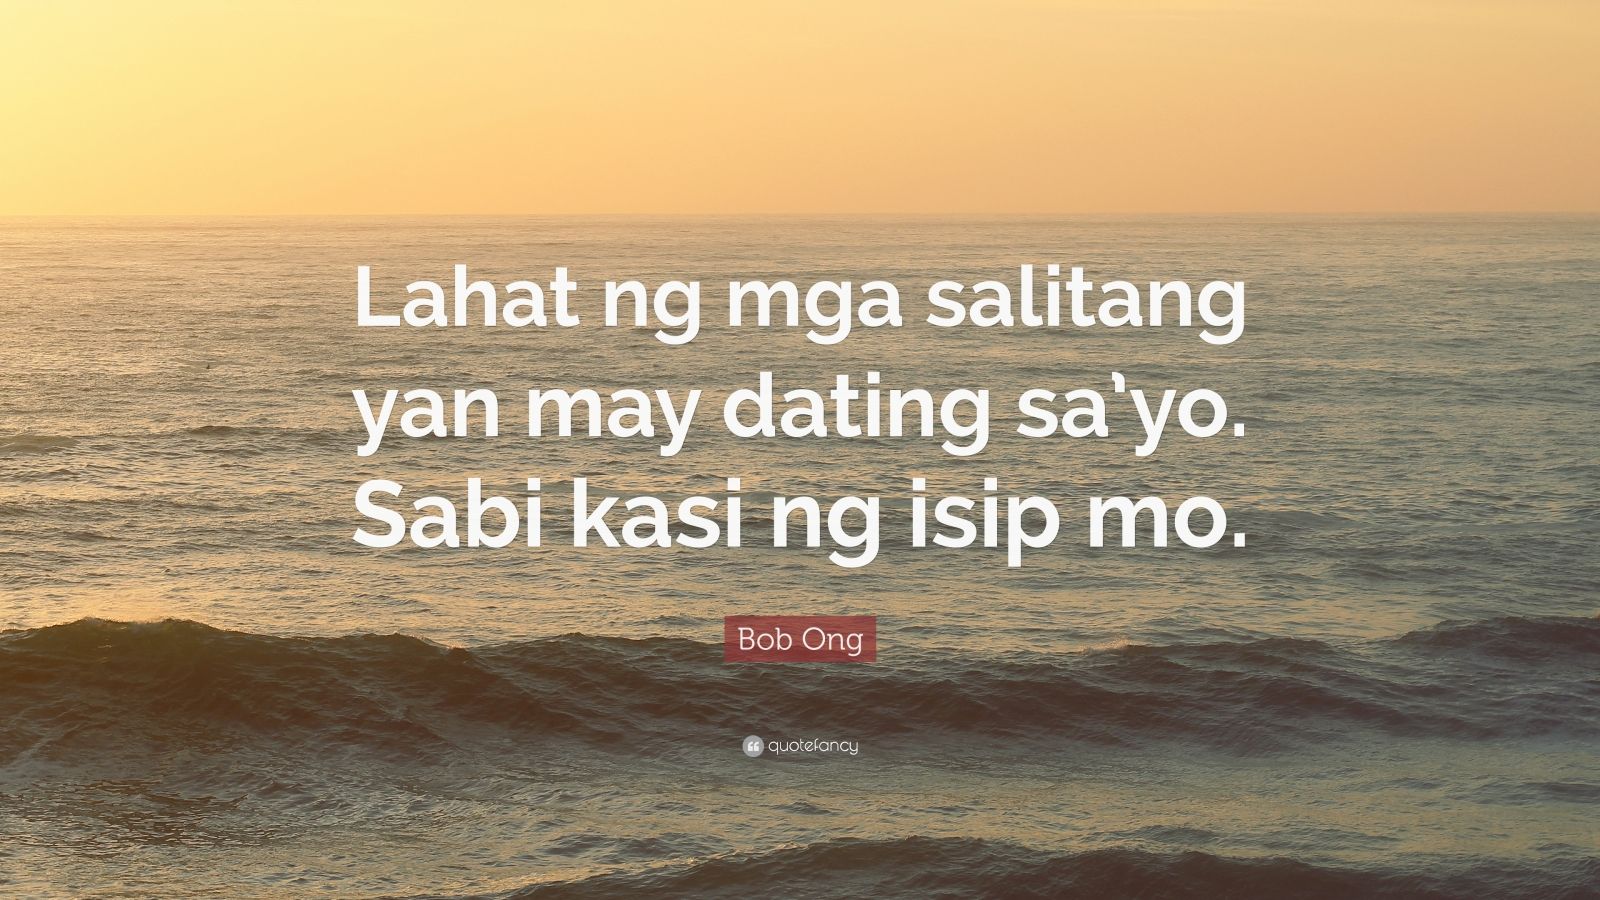 Bob Ong Quote: “Lahat ng mga salitang yan may dating sa’yo. Sabi kasi ...